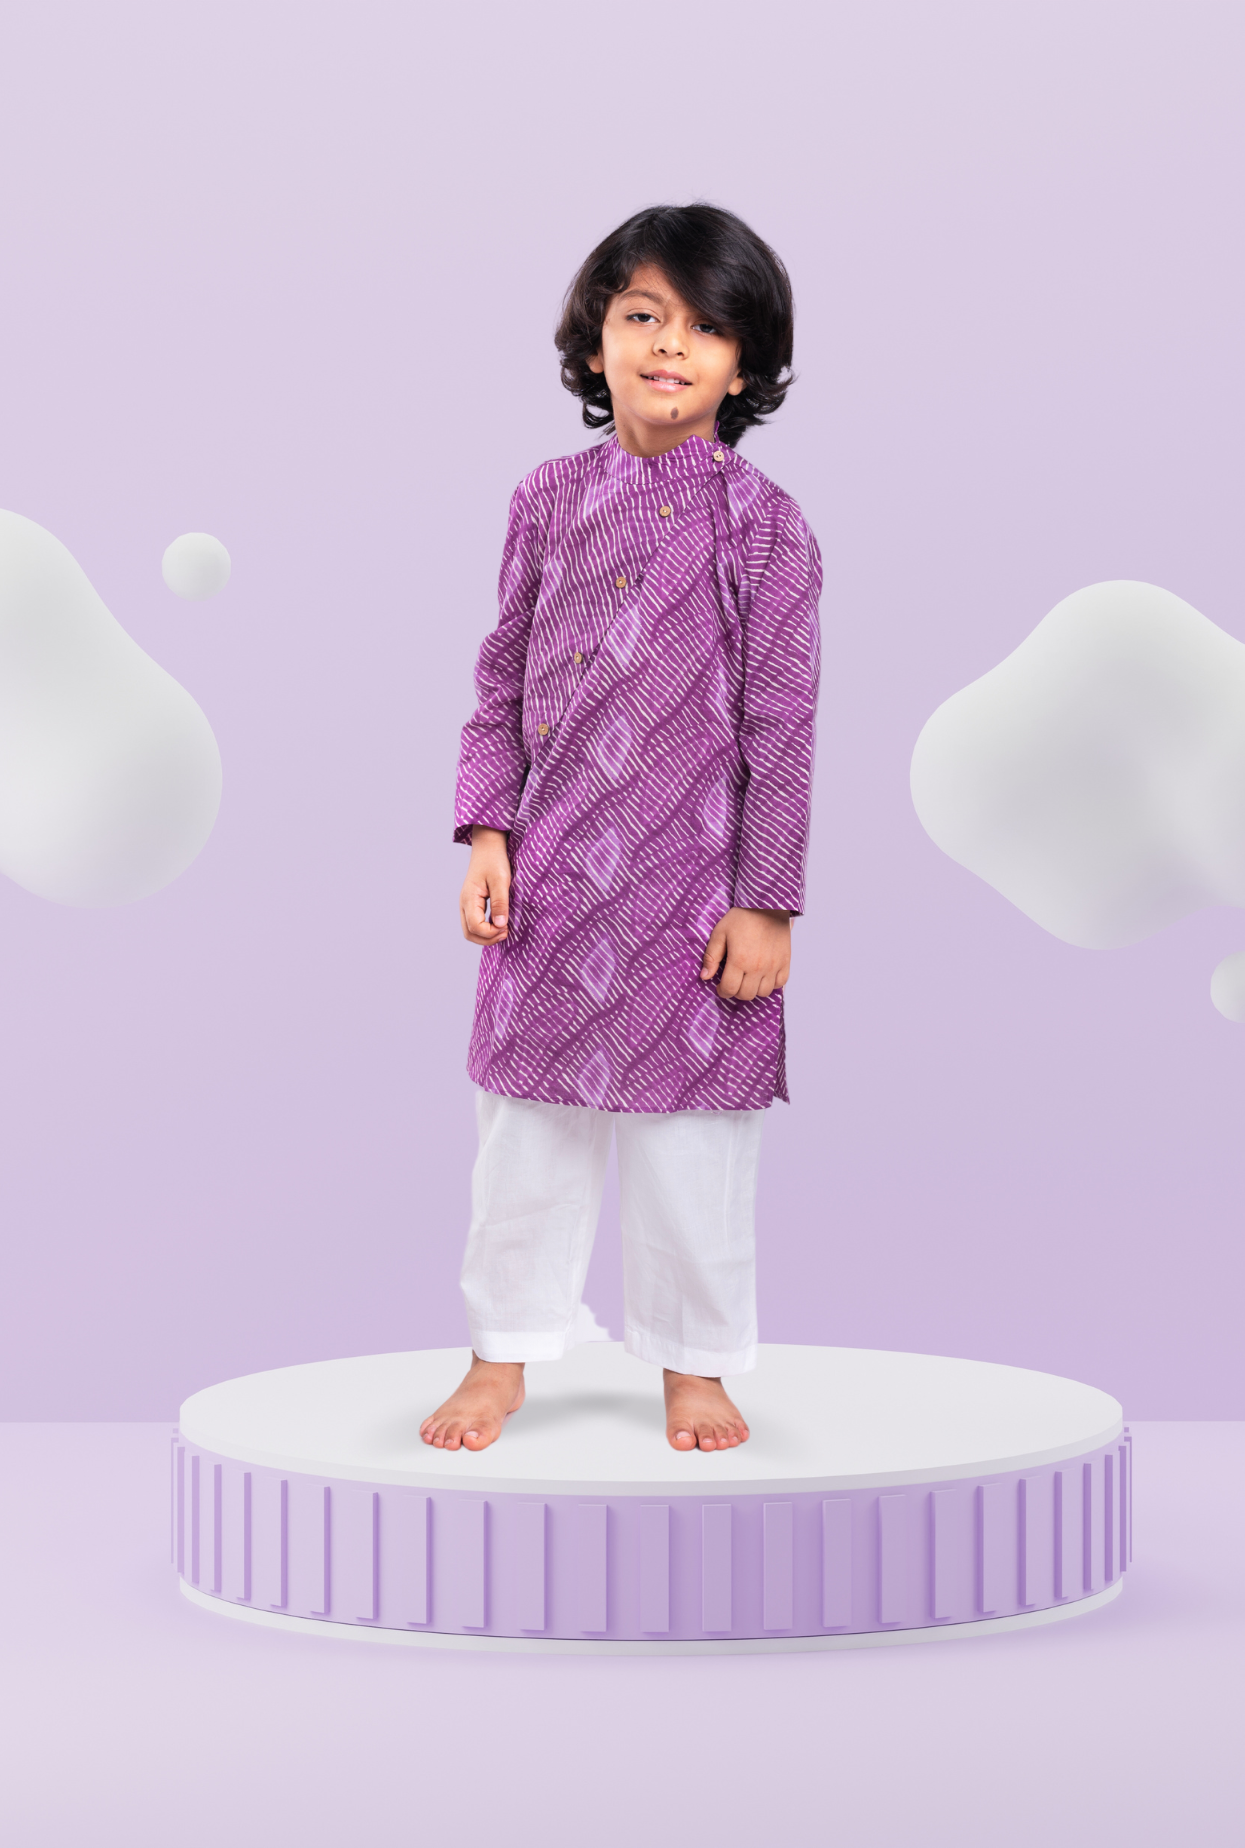 Cotton Rich Leheriya Printkurta Pyjama Set For Boys By Kiddicot